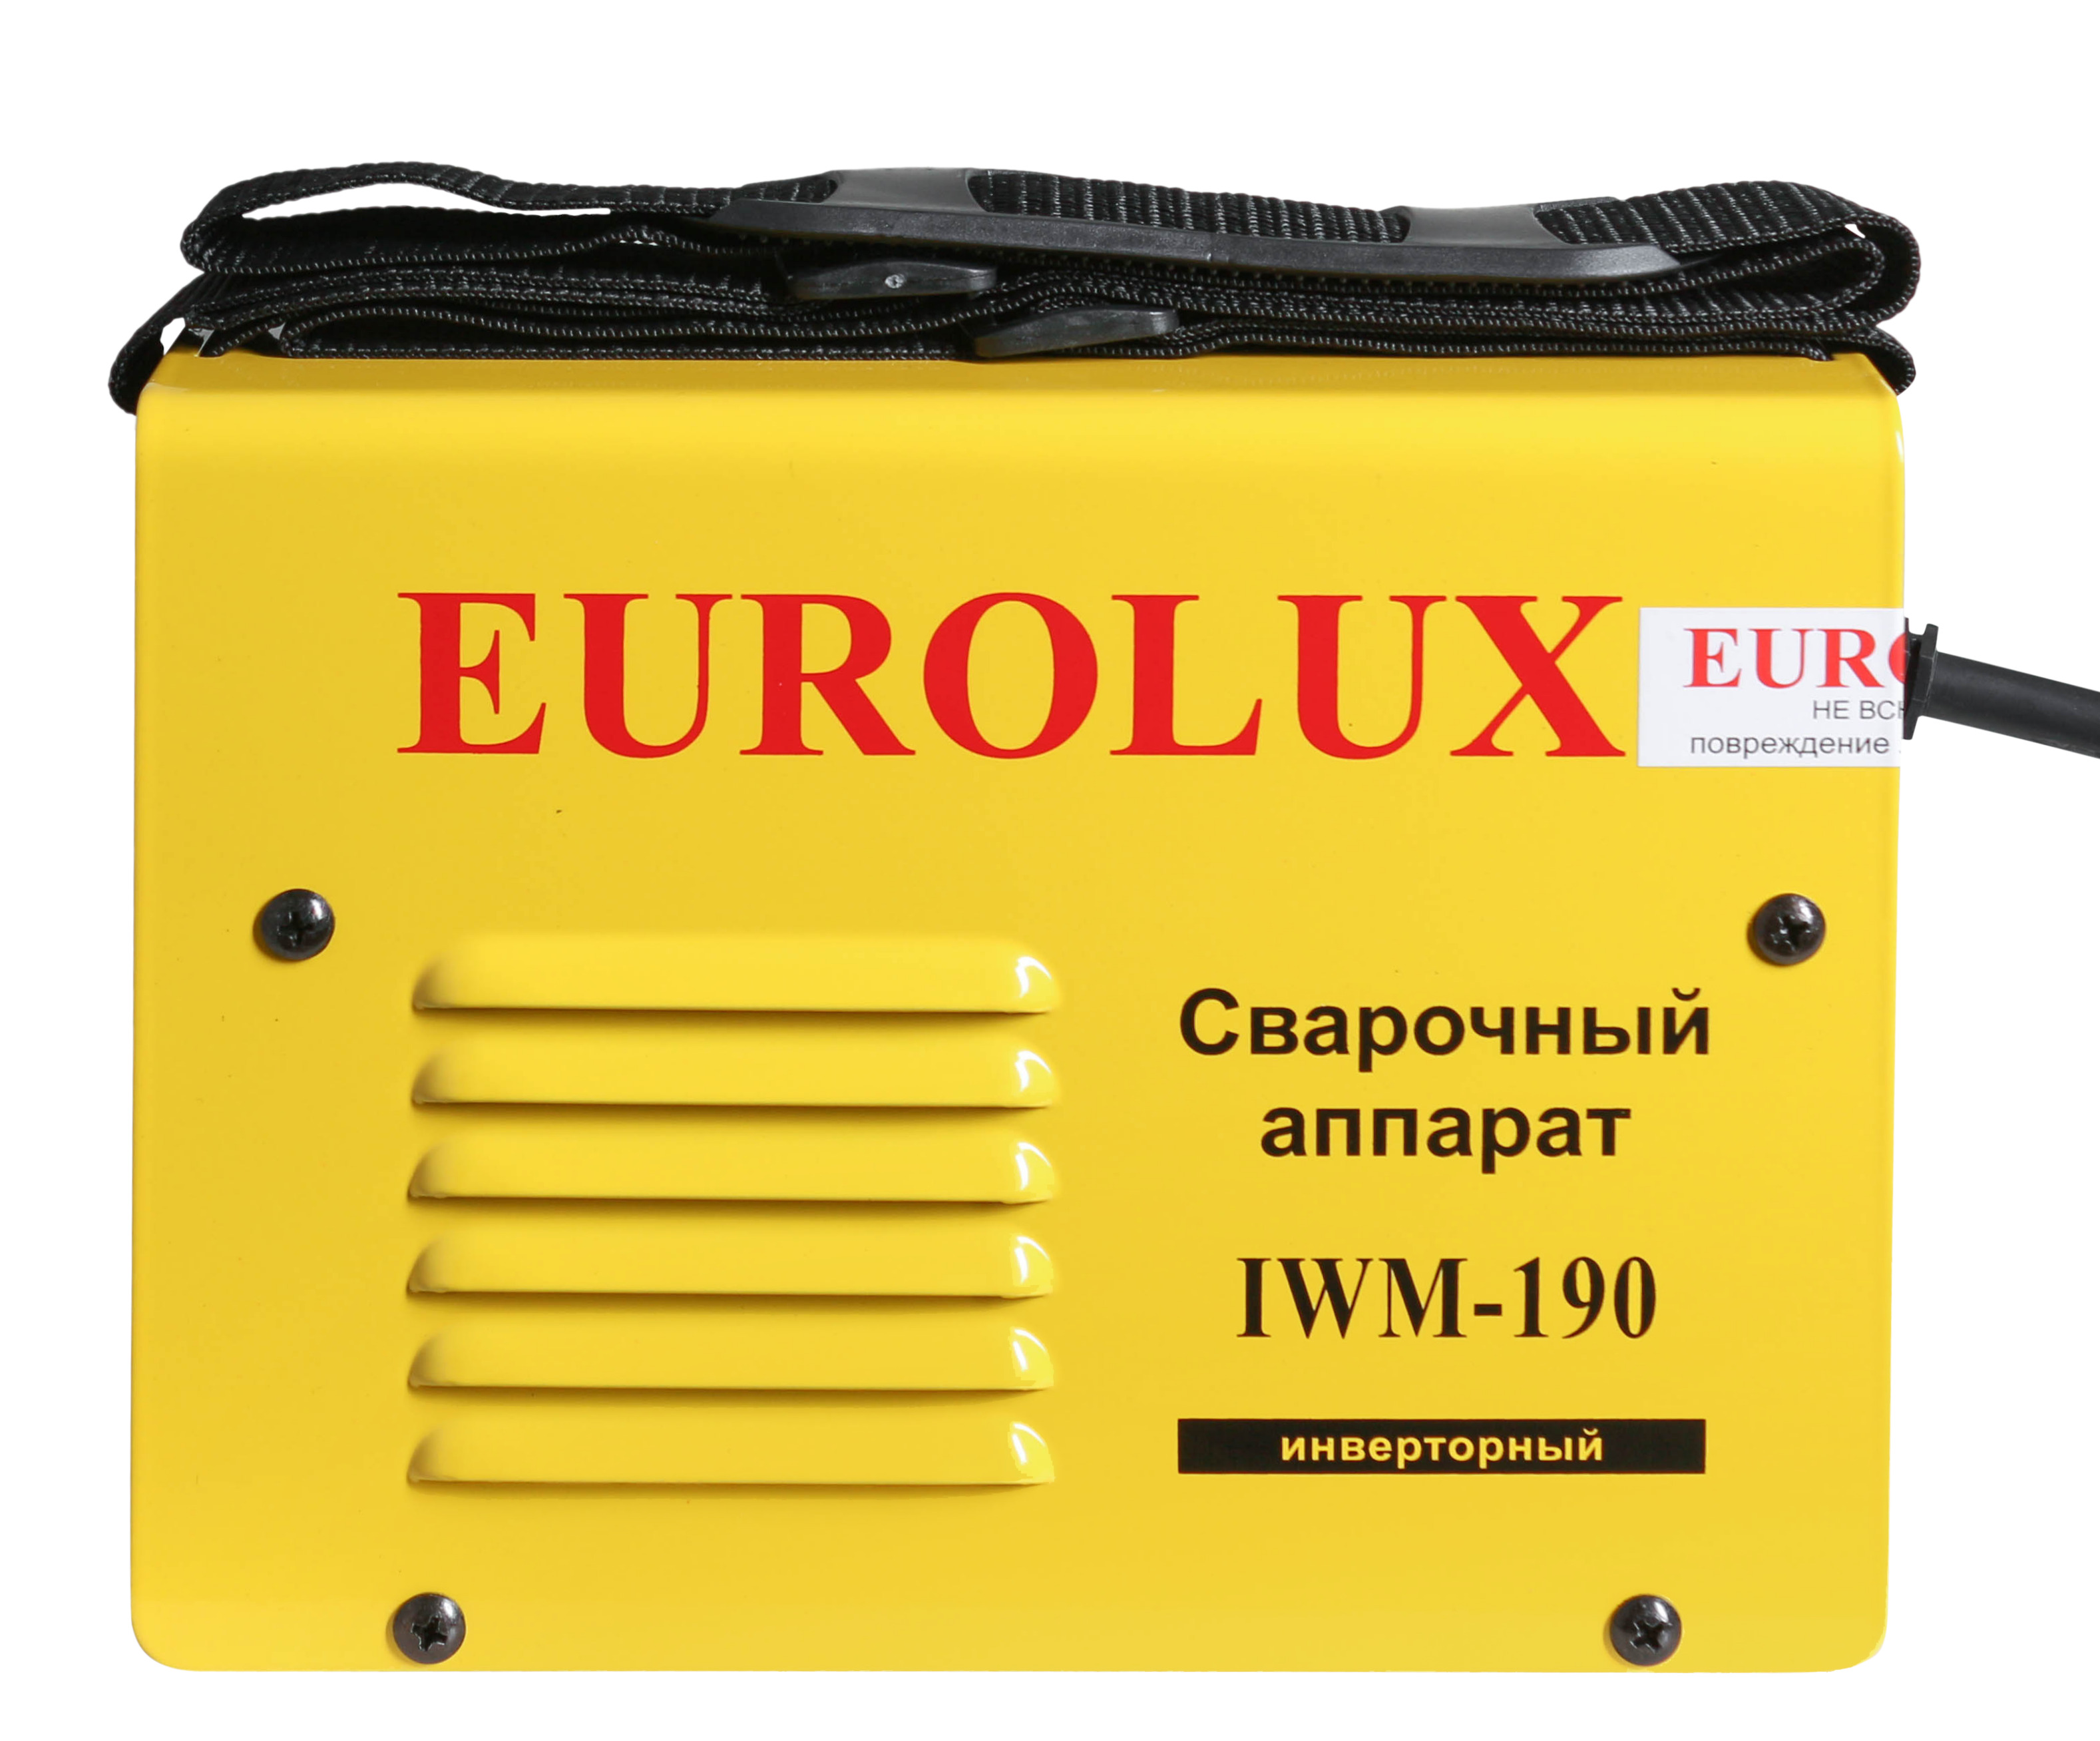 Eurolux iwm190. Сварочный аппарат Eurolux IWM-190. Сварочный аппарат Eurolux iwm190 65/27. Сварочный аппарат инверторный iwm190 Eurolux. Сварочник инверторный IWM 190 Eurolux 65/27.